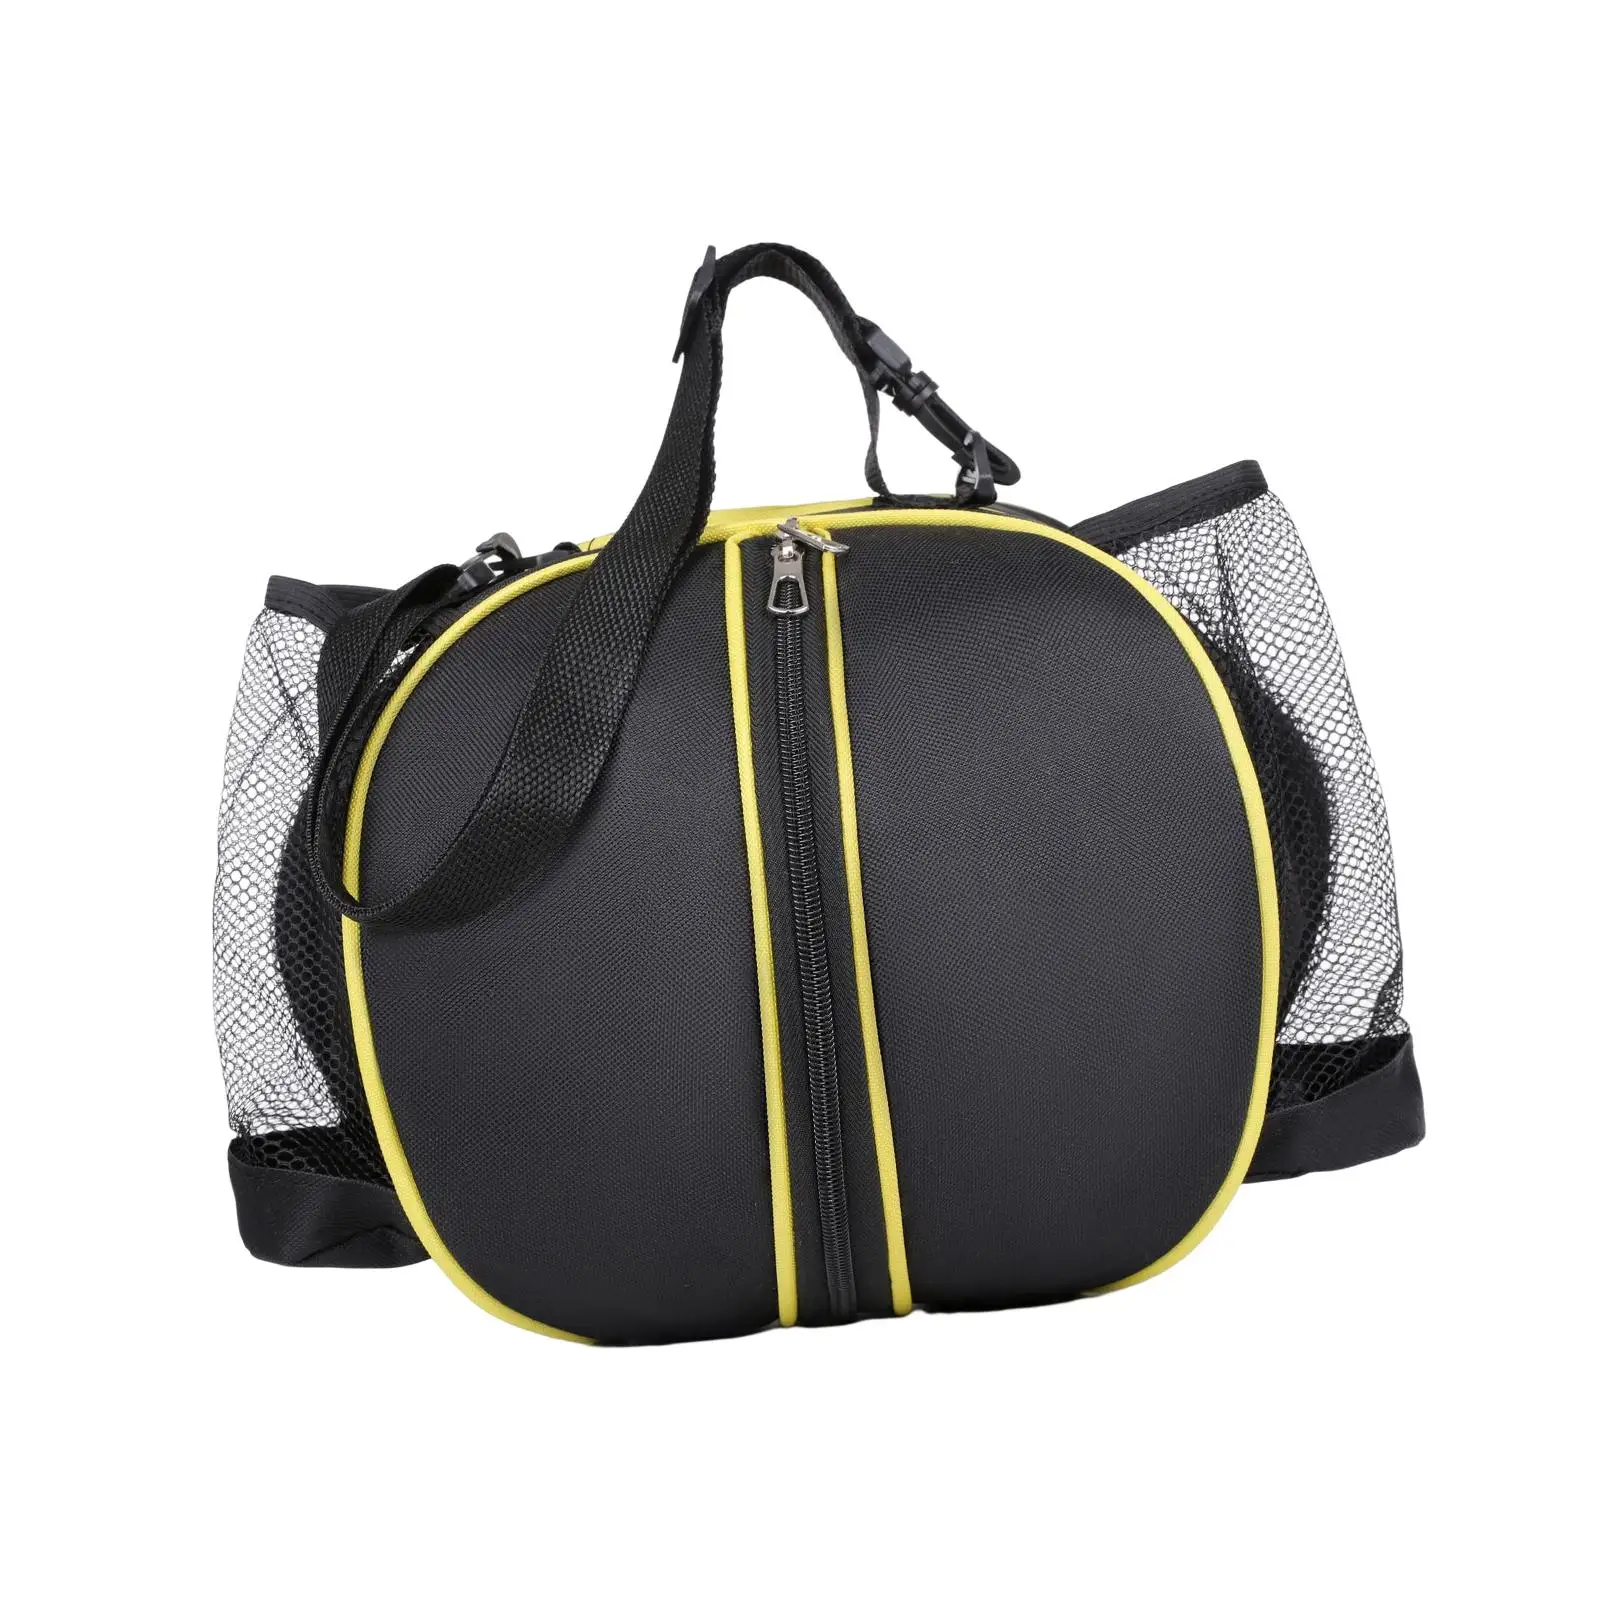 Basketball shoulder bag football storage bag holder with two